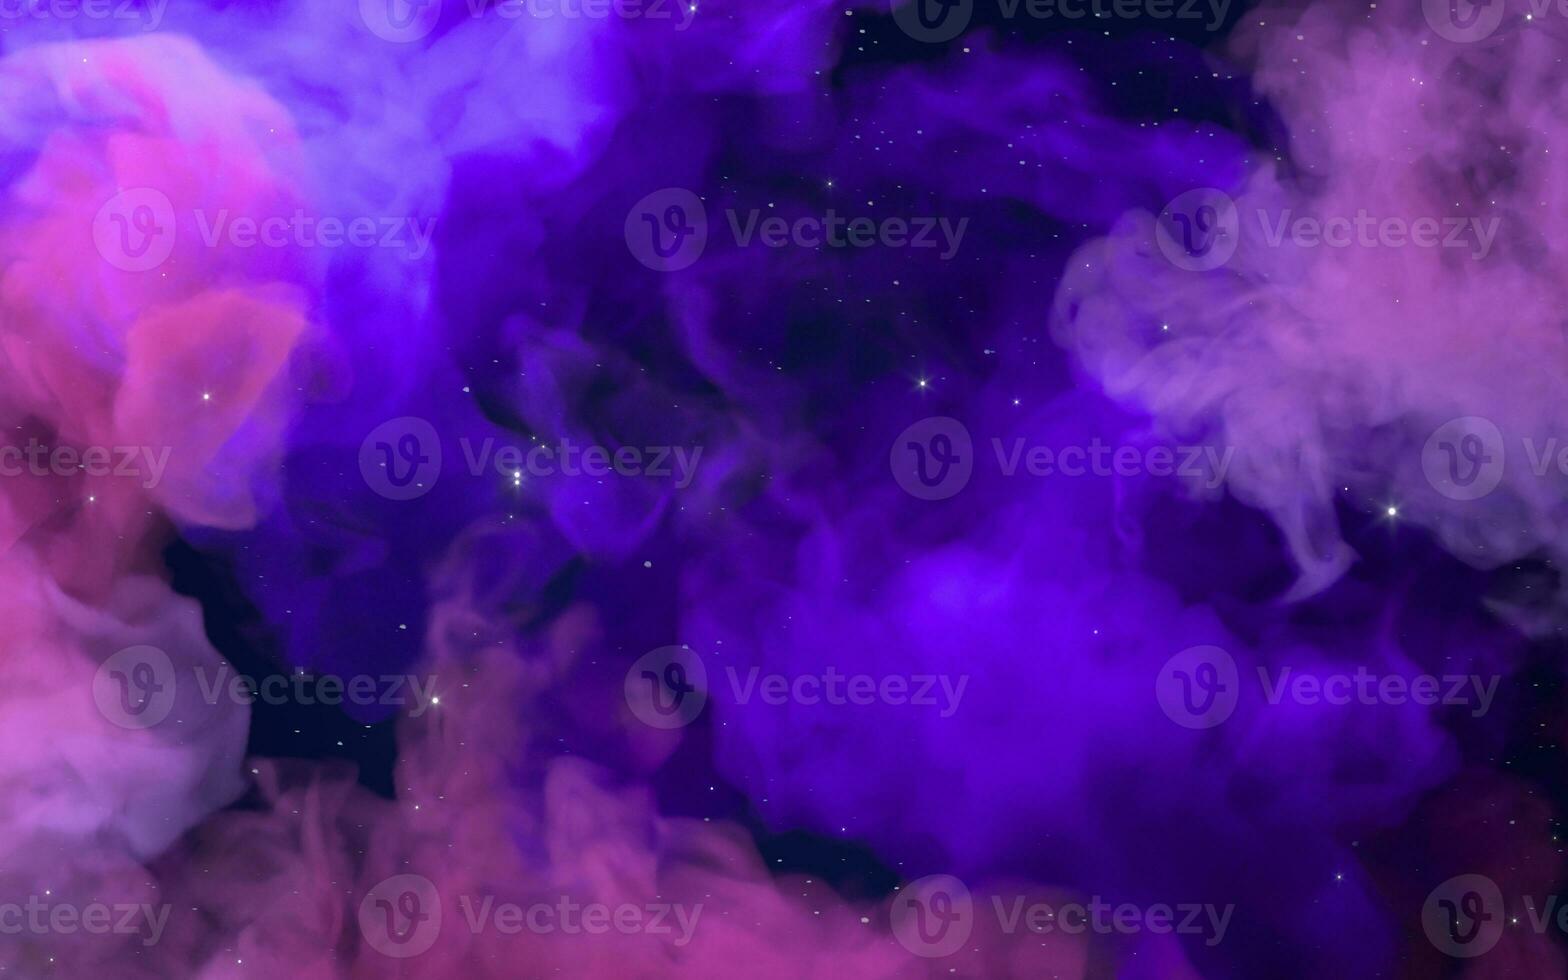 nebulose e colorato Fumo, 3d resa. foto